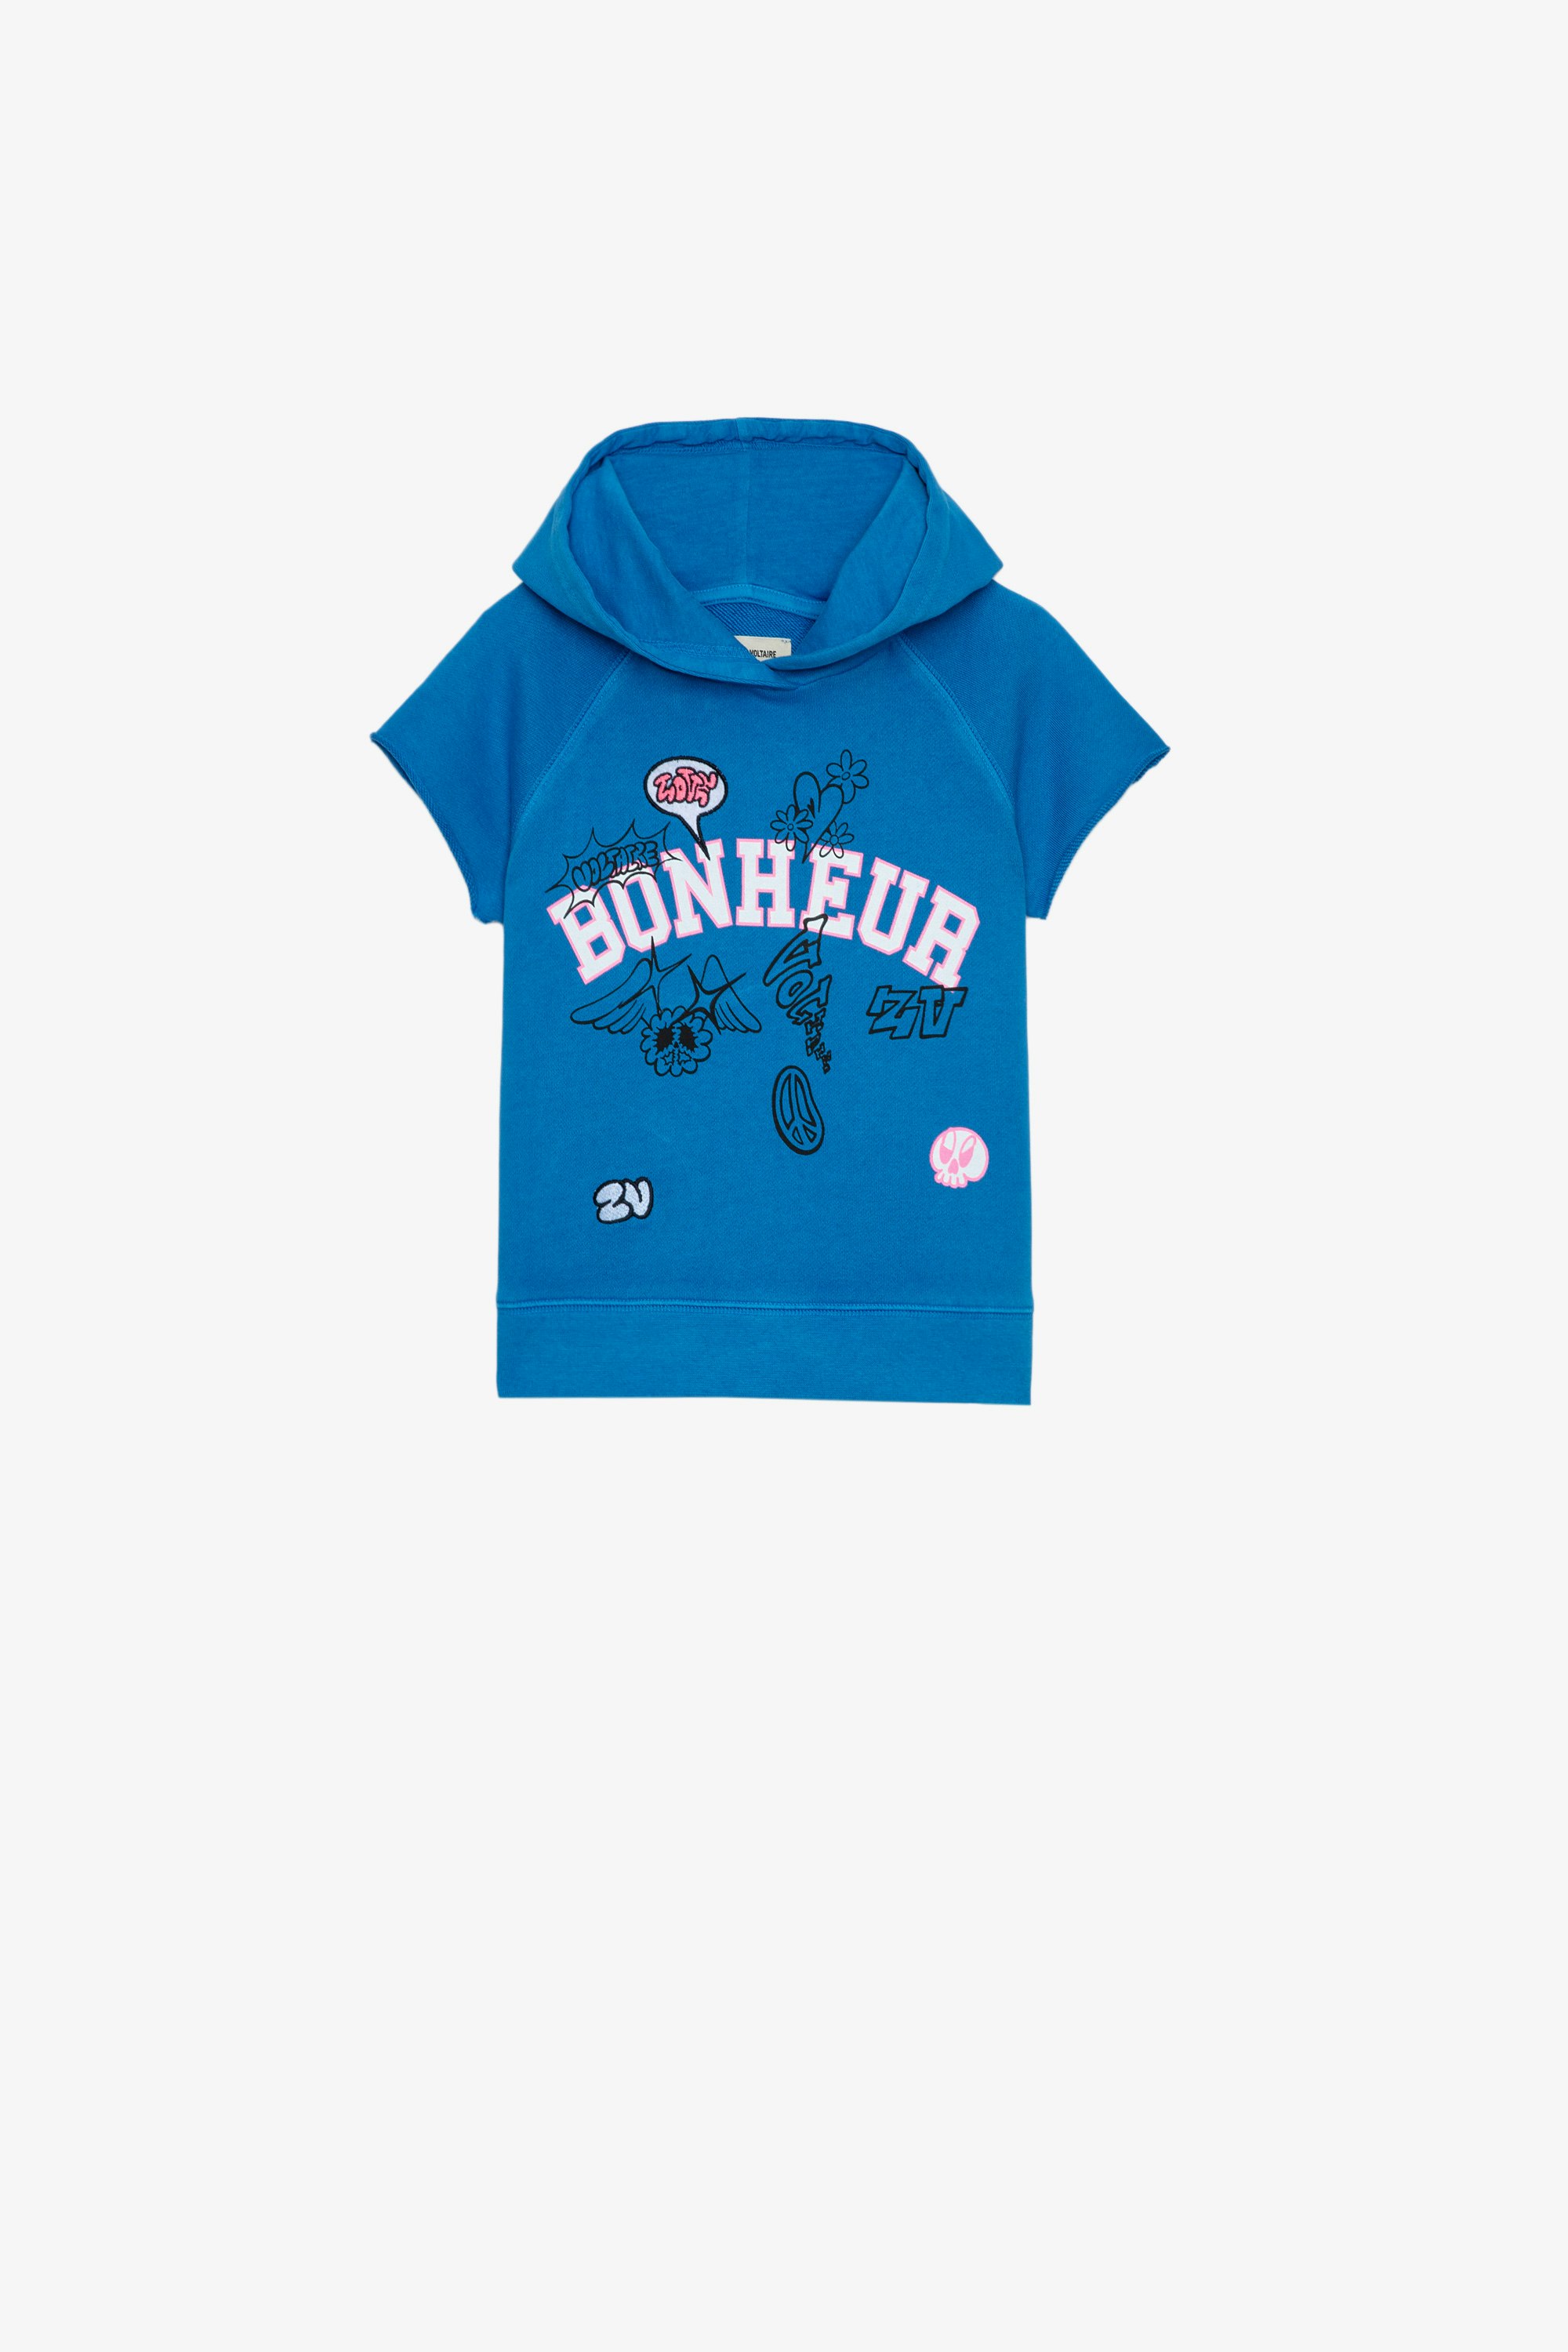 Kinder-Sweatshirt Gorgia Ärmelloses Kinder-Sweatshirt mit Kapuze aus blauer Baumwolle mit dem Schriftzug „Bonheur“ und Stickereien